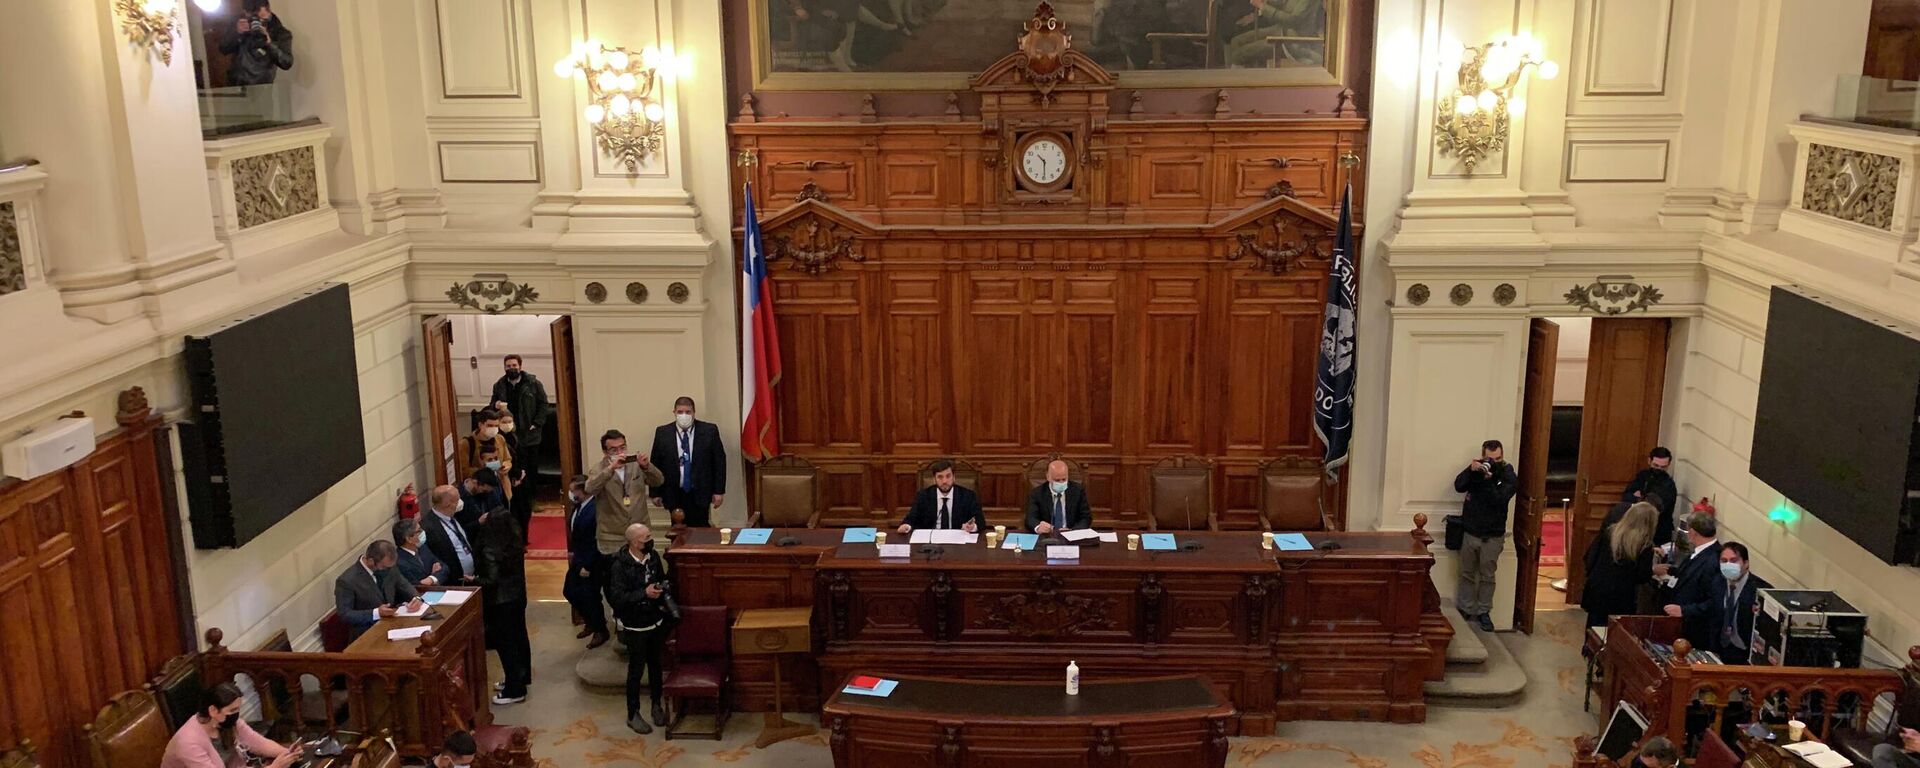 Debate sobre el proceso constituyente en el Congreso de Chile - Sputnik Mundo, 1920, 23.09.2022